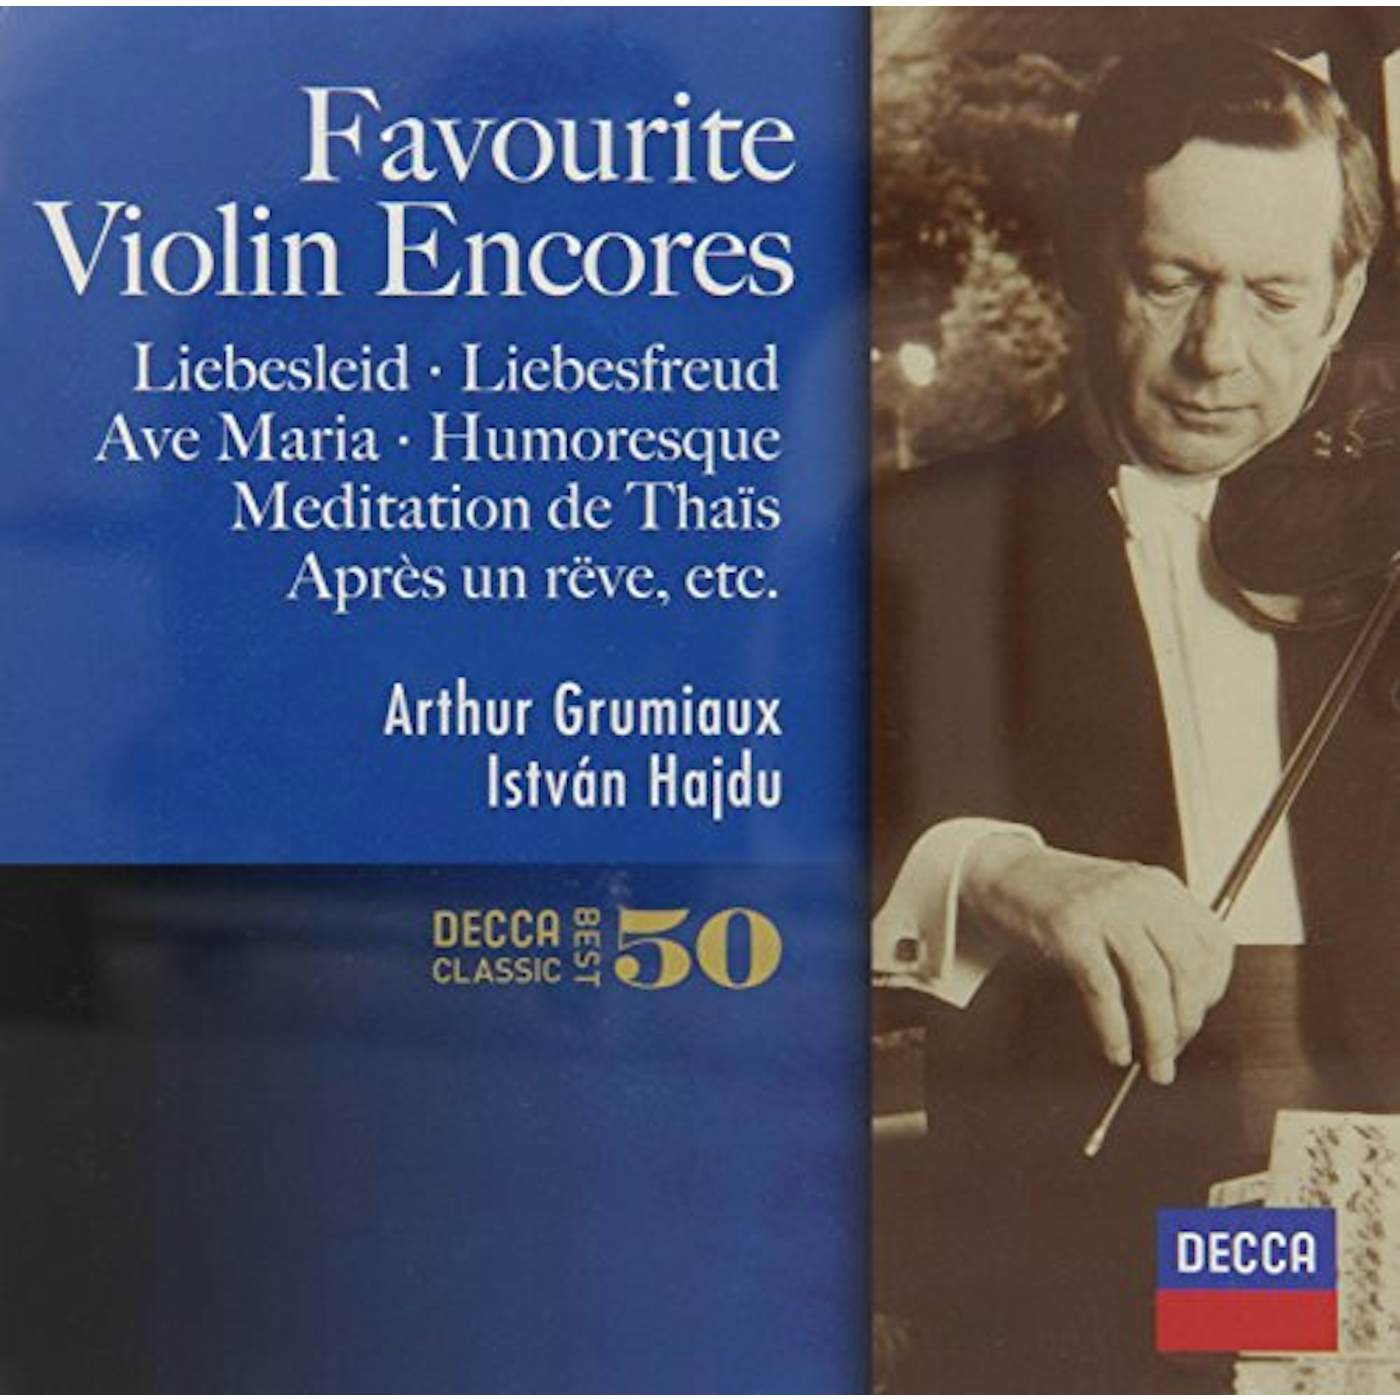 Arthur Grumiaux FAVOURITE VIOLIN ENCORES CD